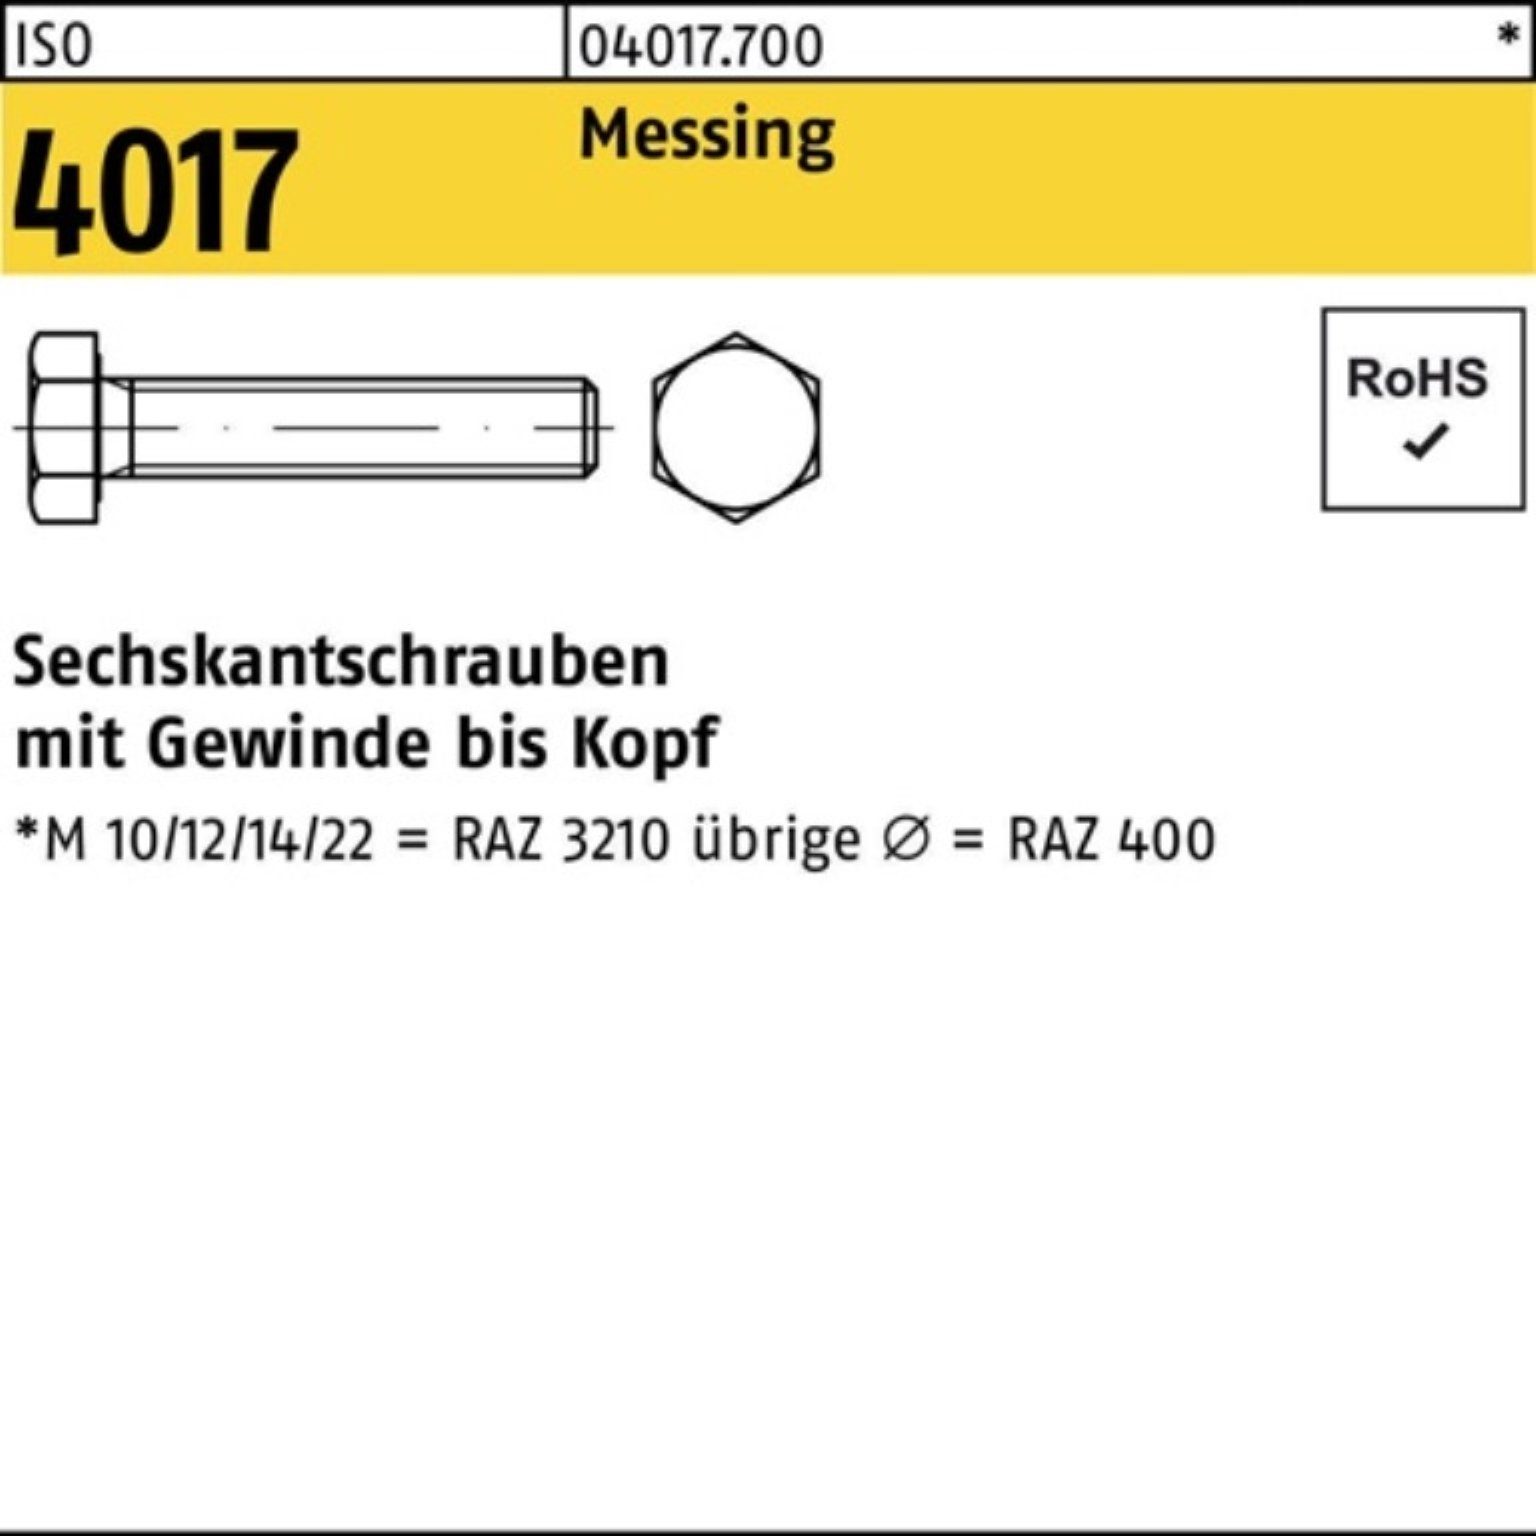 Bufab Sechskantschraube 100er Pack Sechskantschraube VG 50 Stück 4017 ISO M12x ISO Messing 35